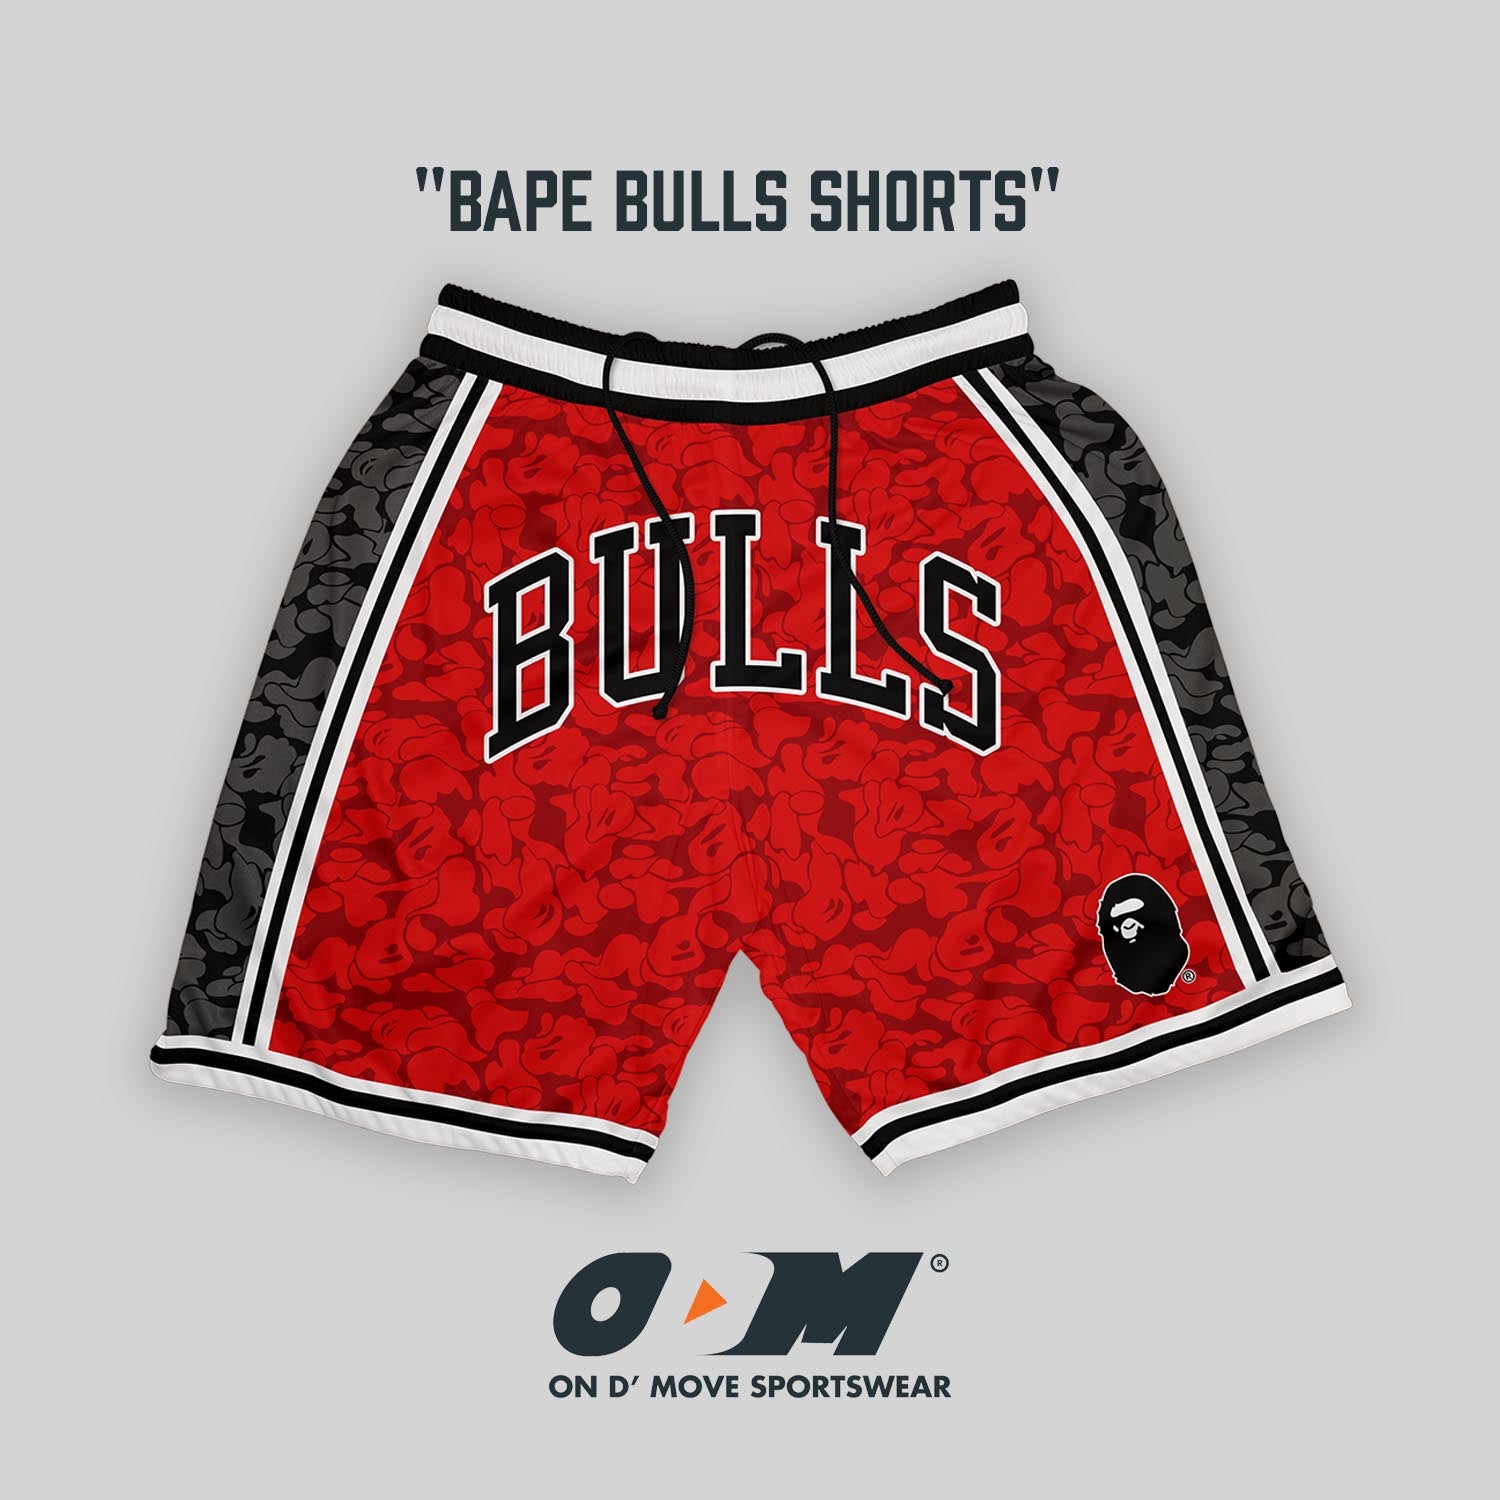 BAPE Bulls Shorts